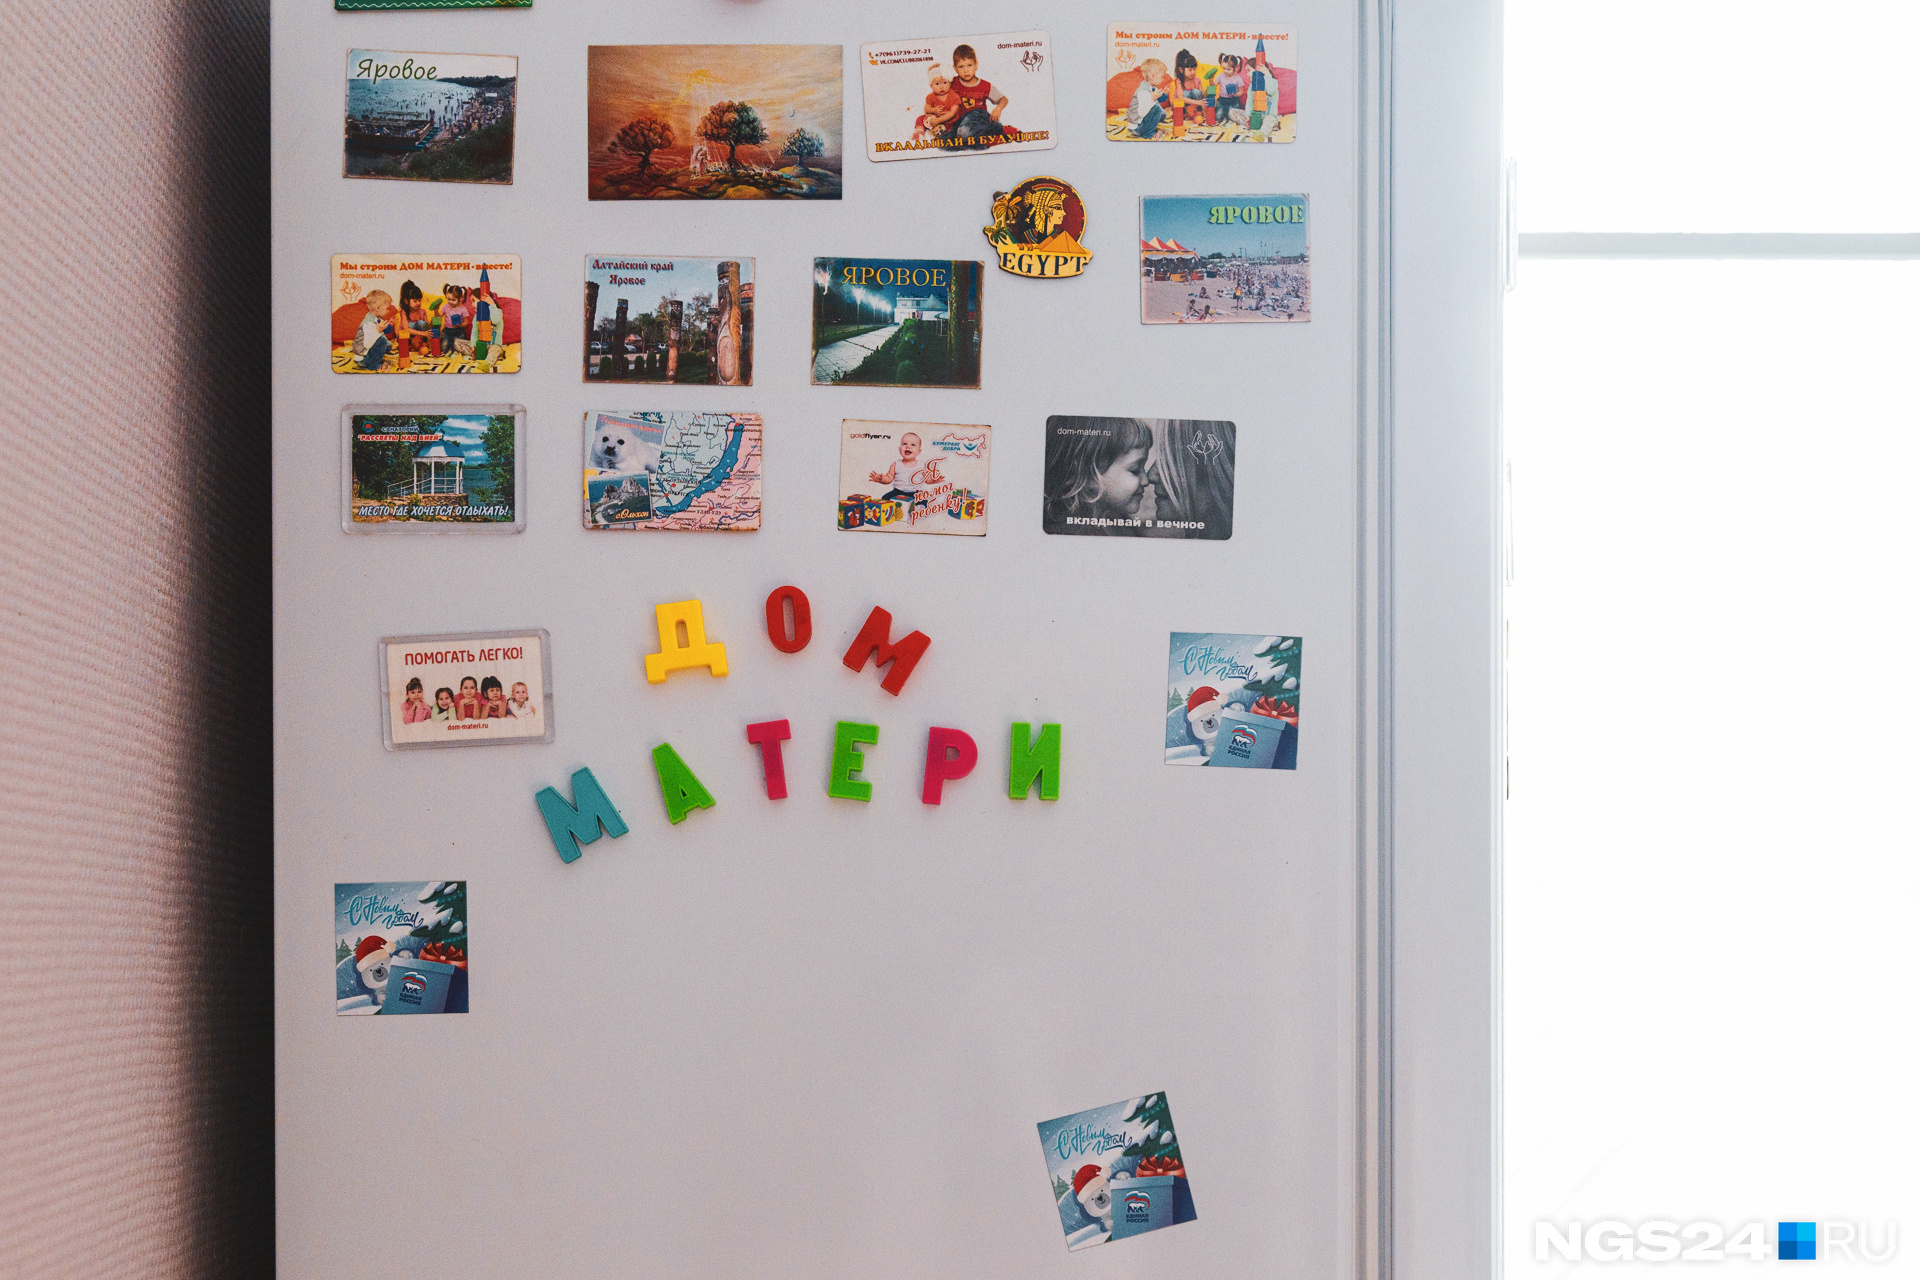 Дети составили из букв на холодильнике название приюта